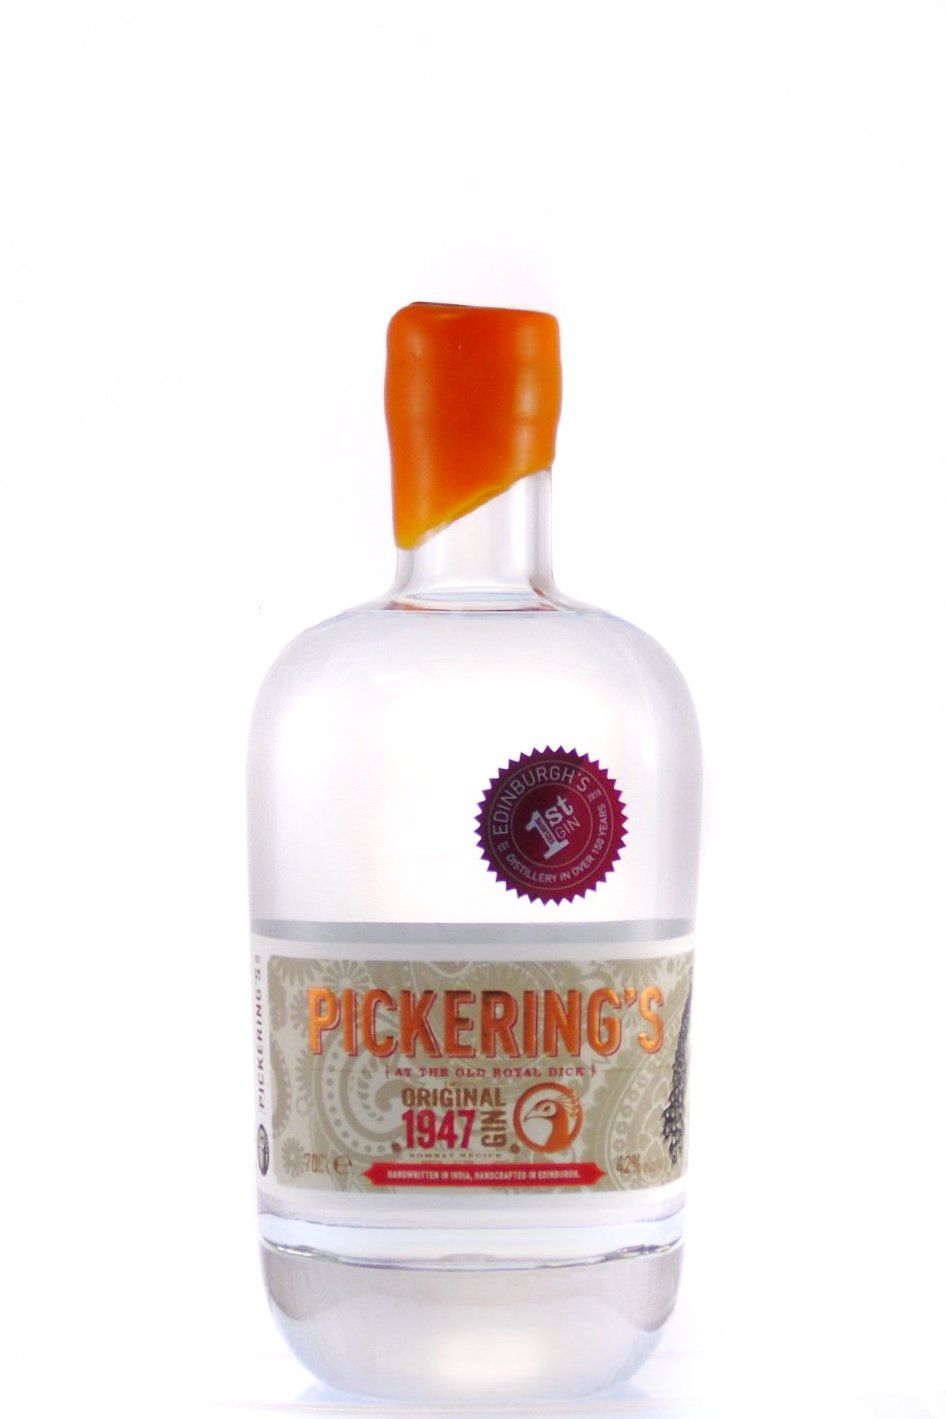 Pickerings 1947 Gin